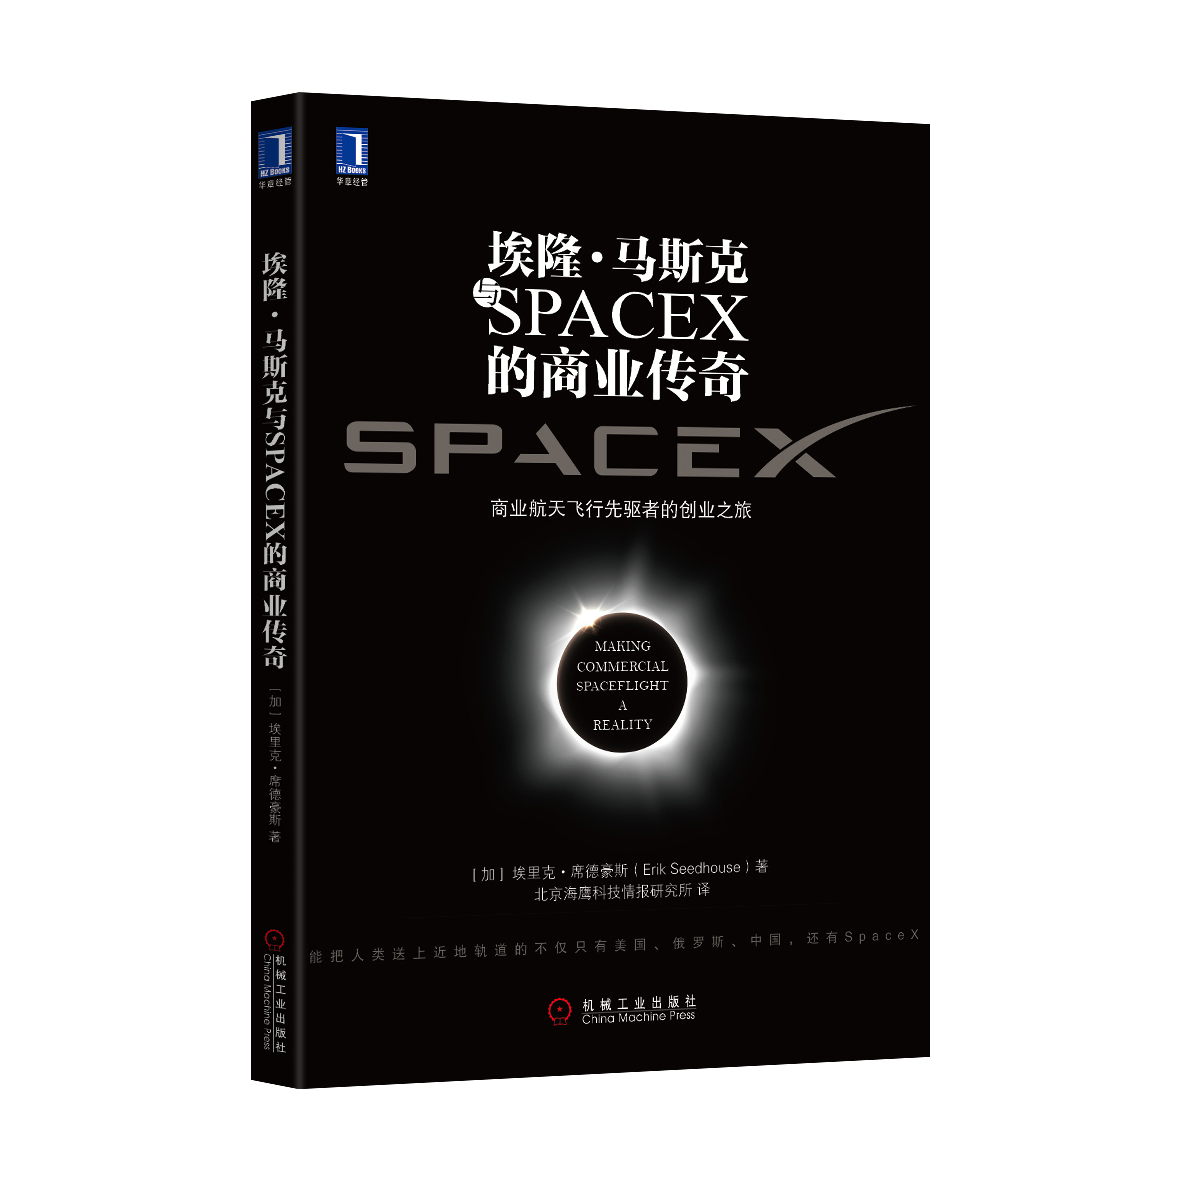 推荐阅读《埃隆·马斯克与spacex的商业传奇》